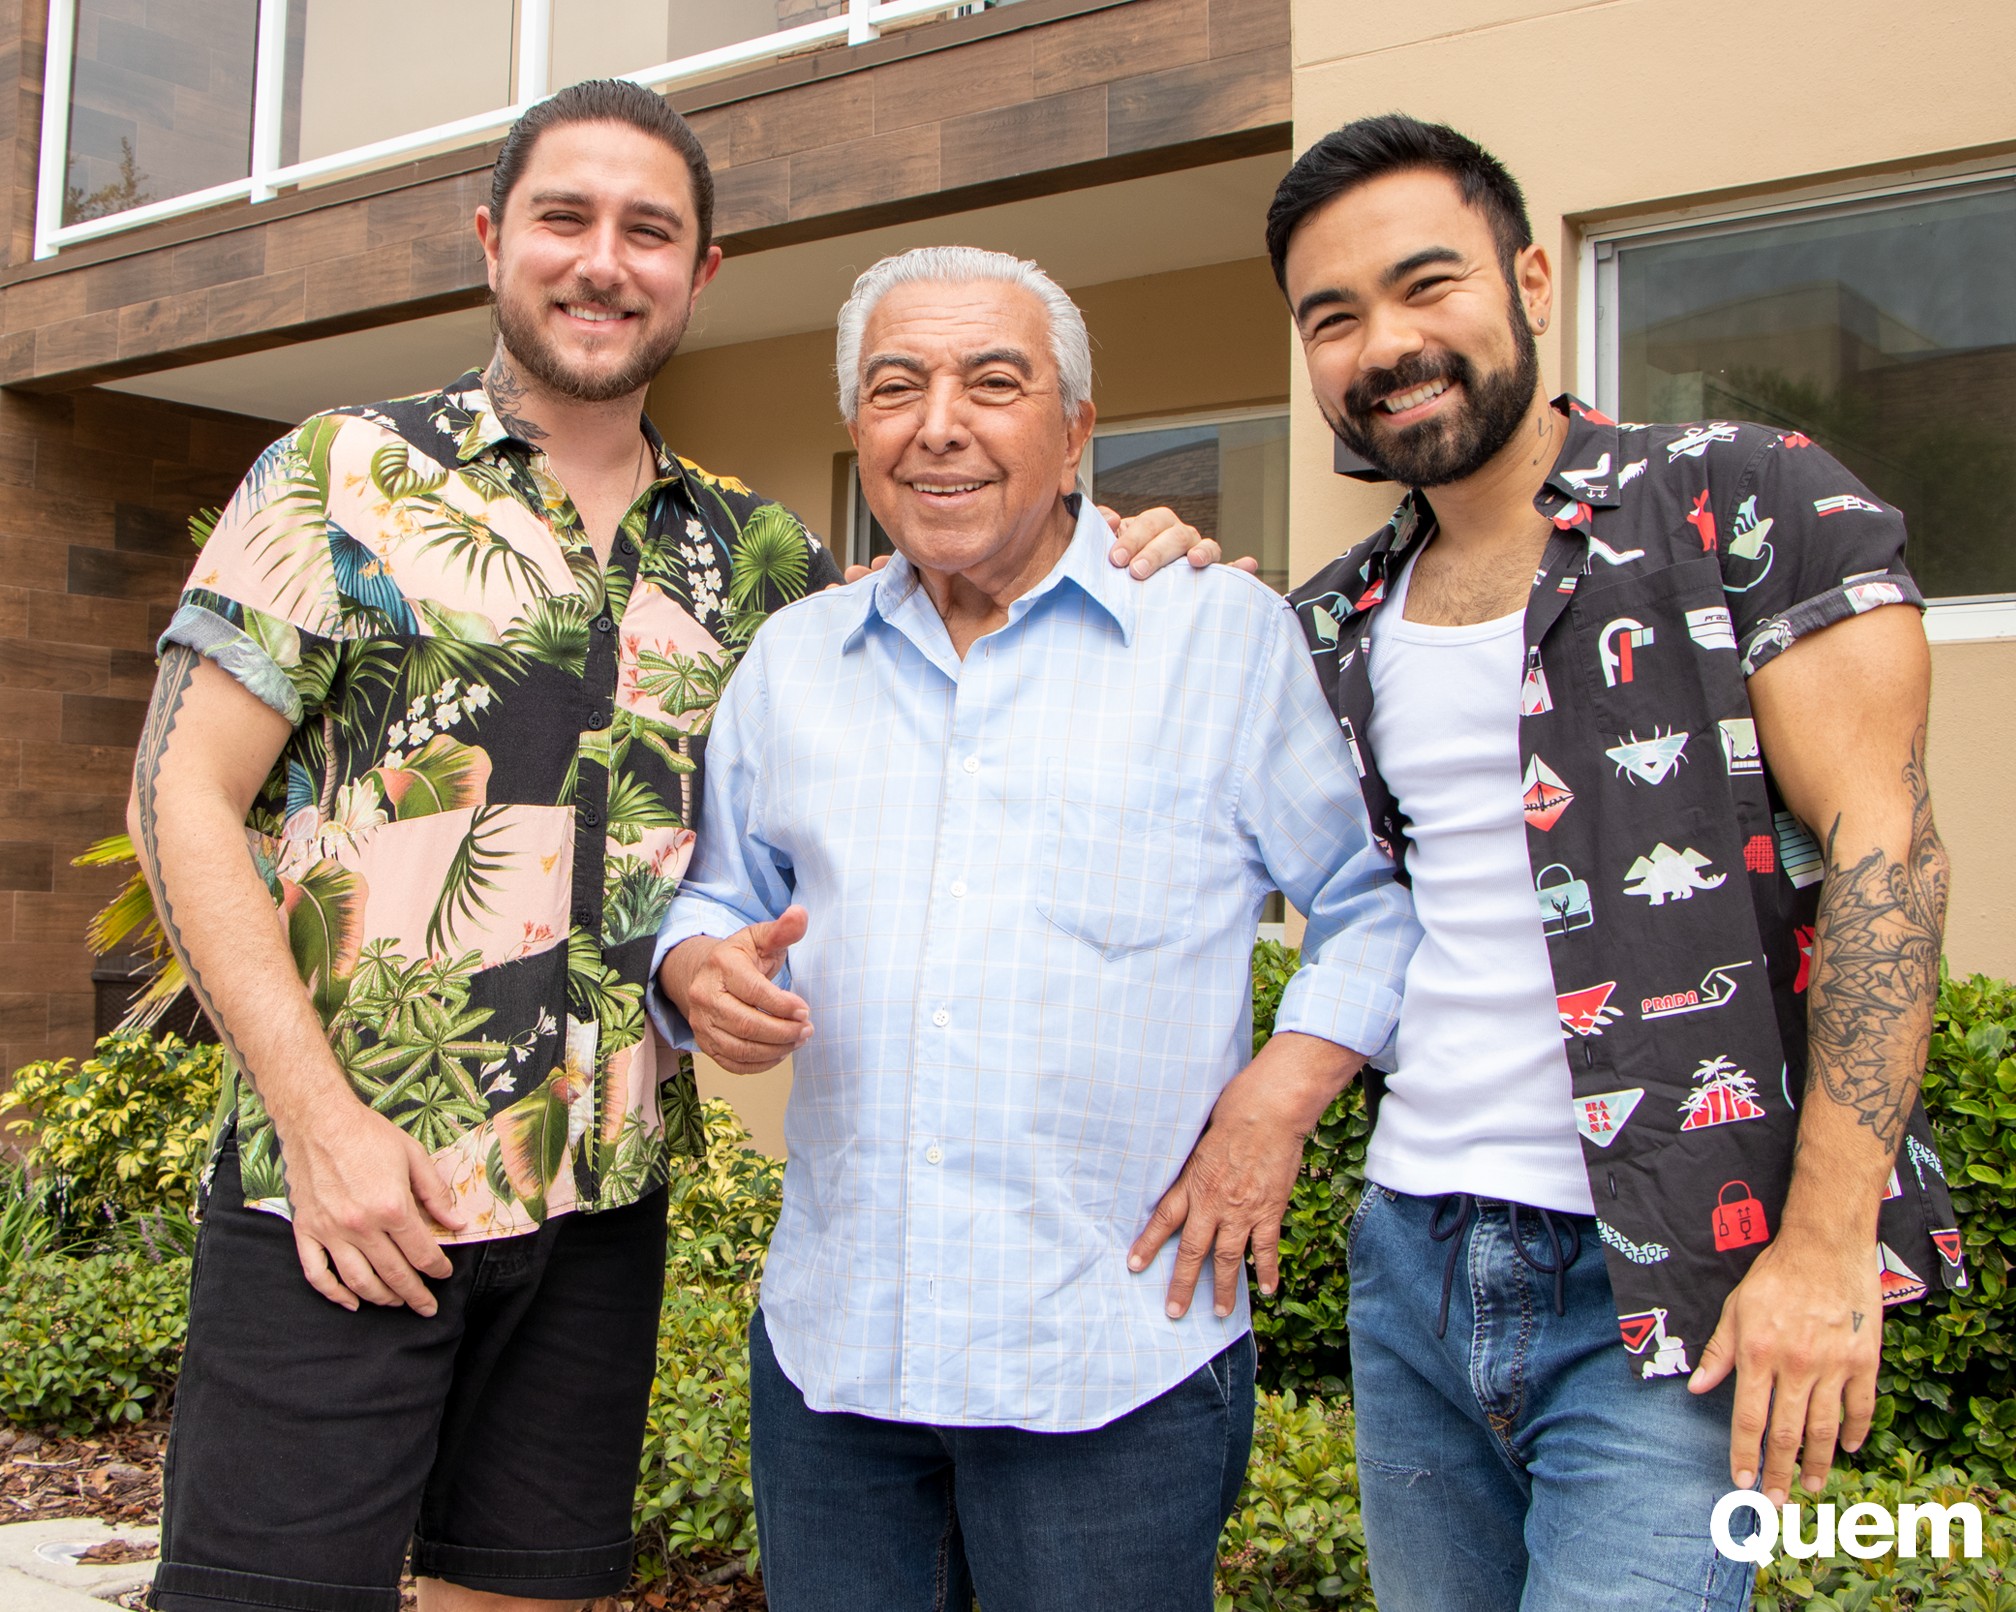 Mauricio de Sousa se diverte com a família em Orlando (Foto: AJ Someillan e Frank The Photographer)